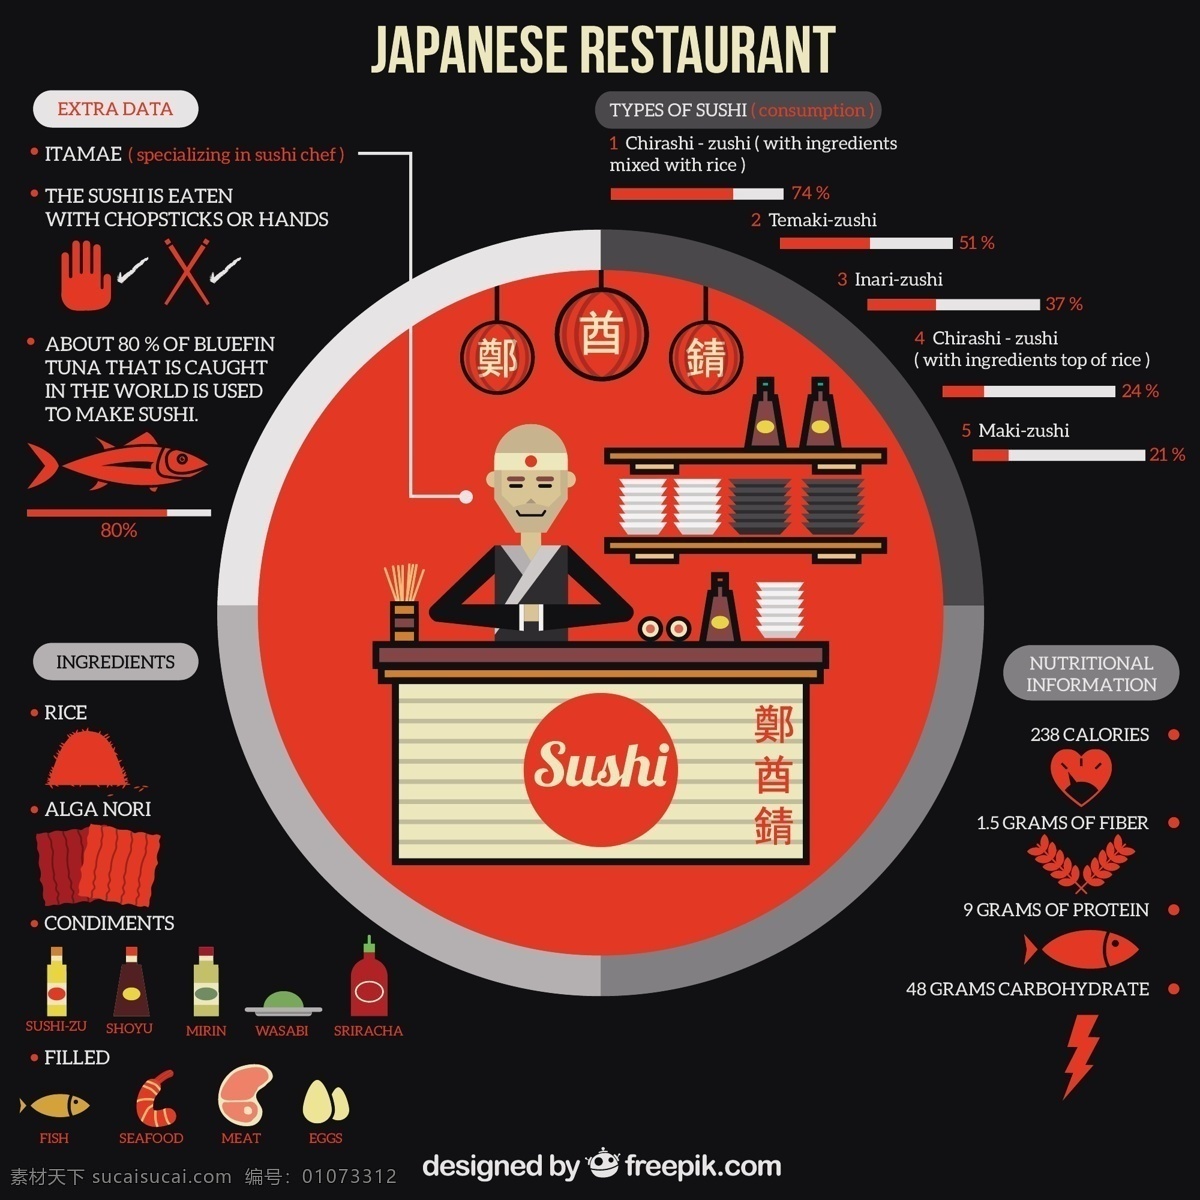 日本 餐厅 infography 图表 食品 菜单设计 餐饮 鱼 厨房 时间表 平 图形 烹饪 有机 寿司 餐馆 菜单 图 平面设计 信息 黑色